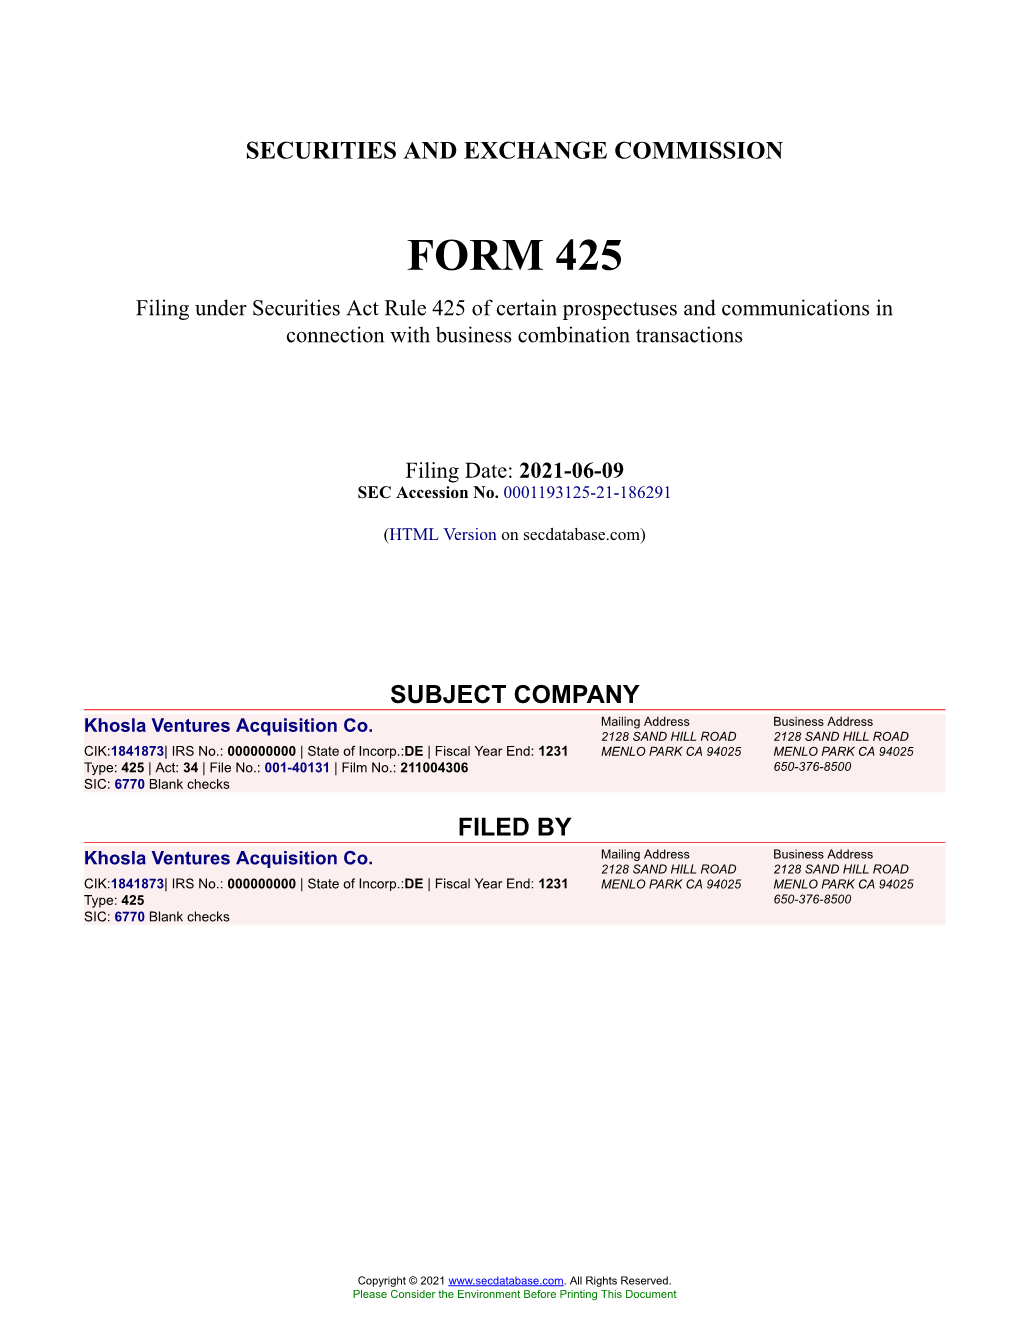 Khosla Ventures Acquisition Co. Form 425 Filed 2021-06-09